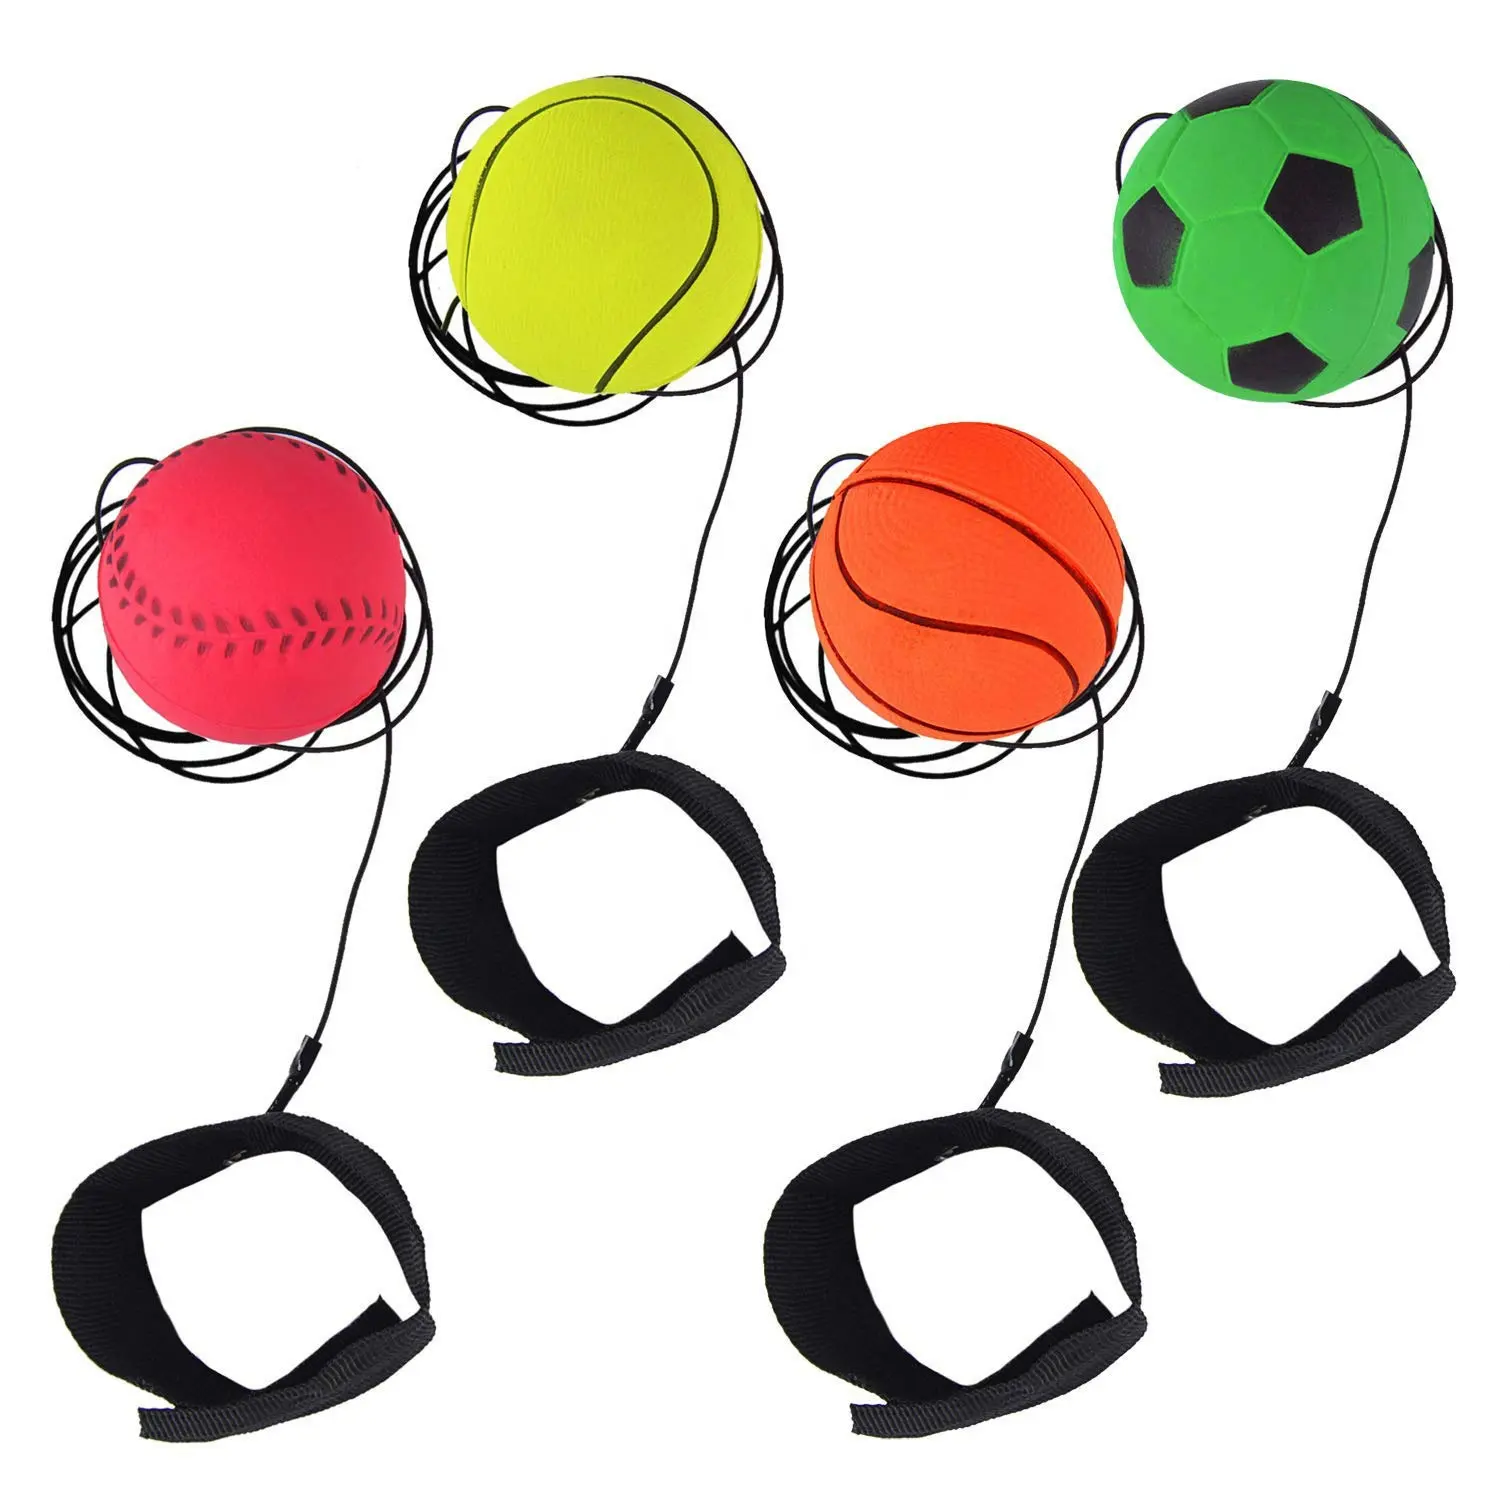 ลูกบอลข้อมือหลากสีสายรัดข้อมือลูกบอลกีฬาบนเชือกของเล่นเด้งกลับยางของเล่นสำหรับเด็กผู้ชายเด็กผู้หญิง